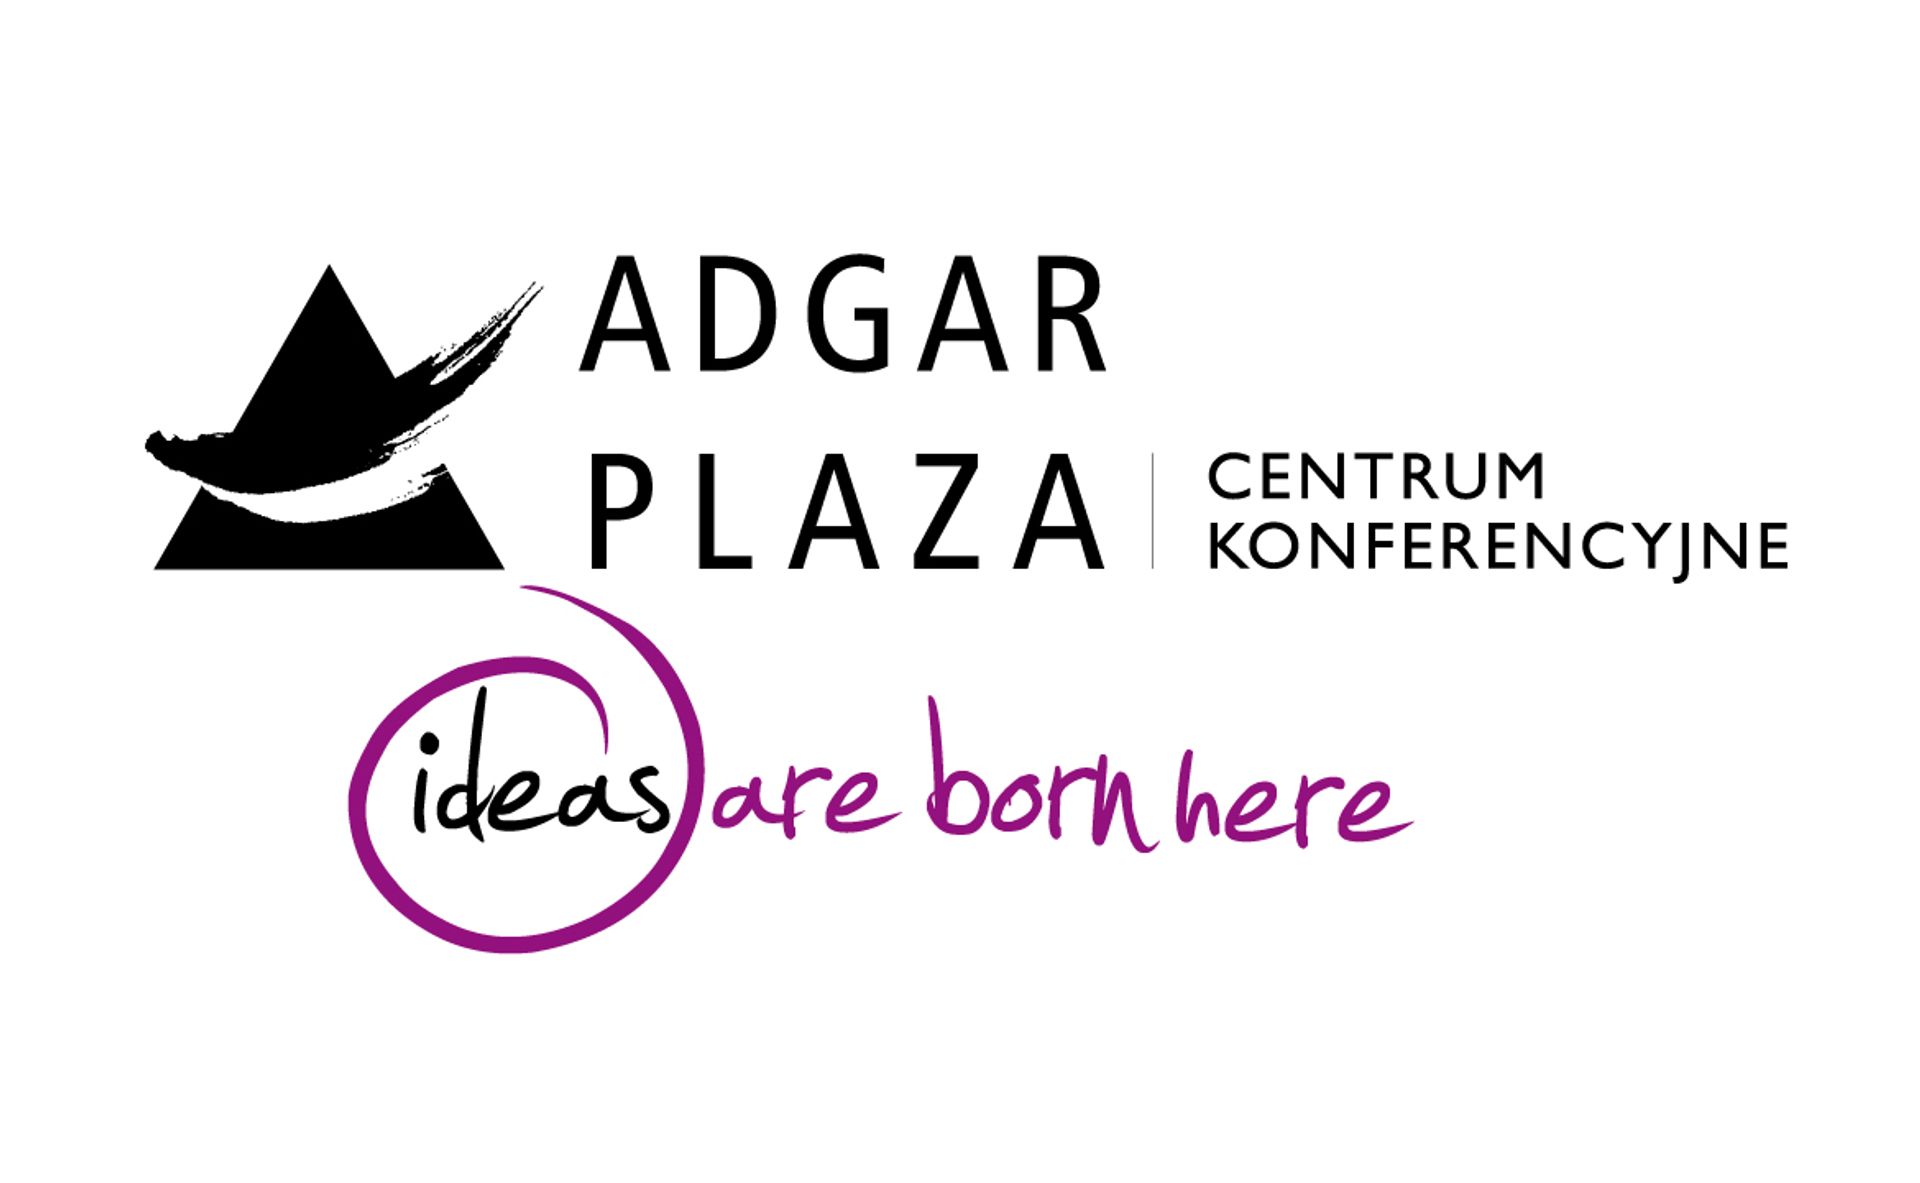  Centrum konferencyjne adgar plaza rozbudowuje się i zmienia logo